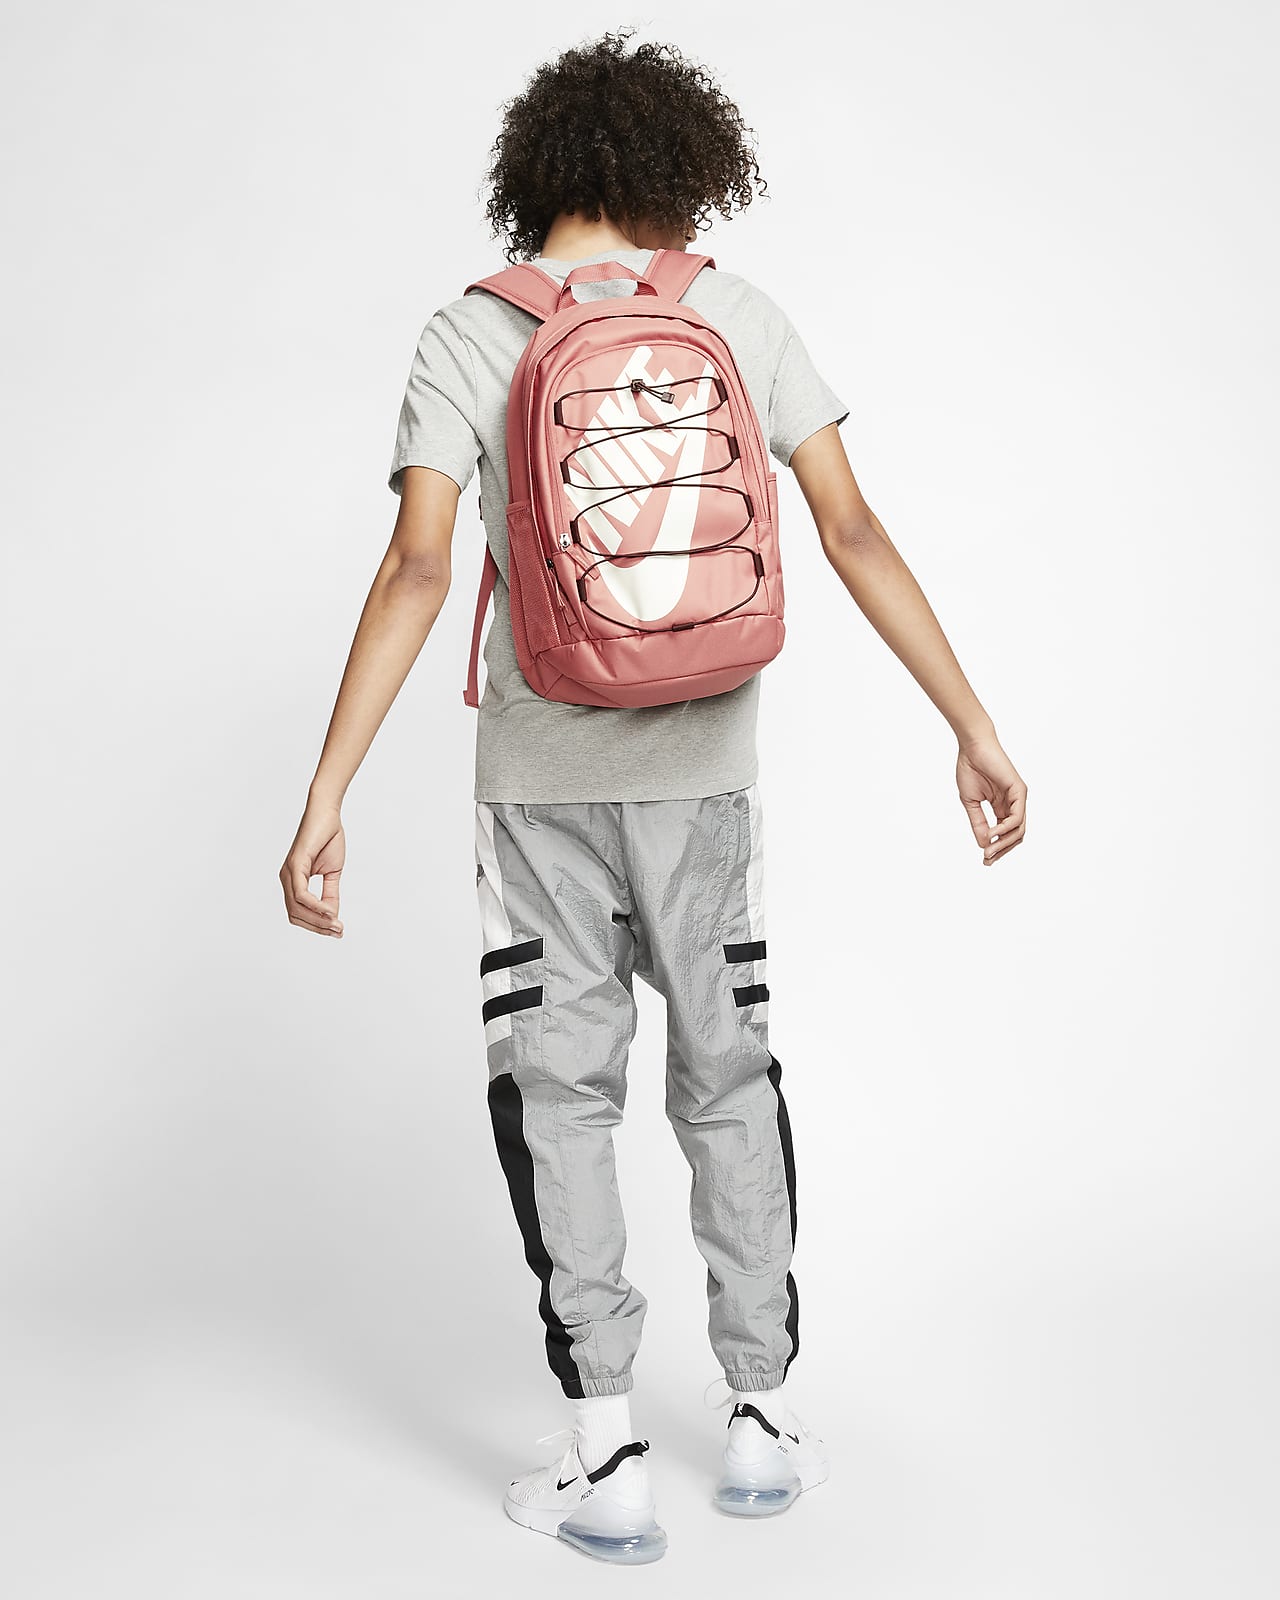 nike hayward 2.0 backpack dimensions